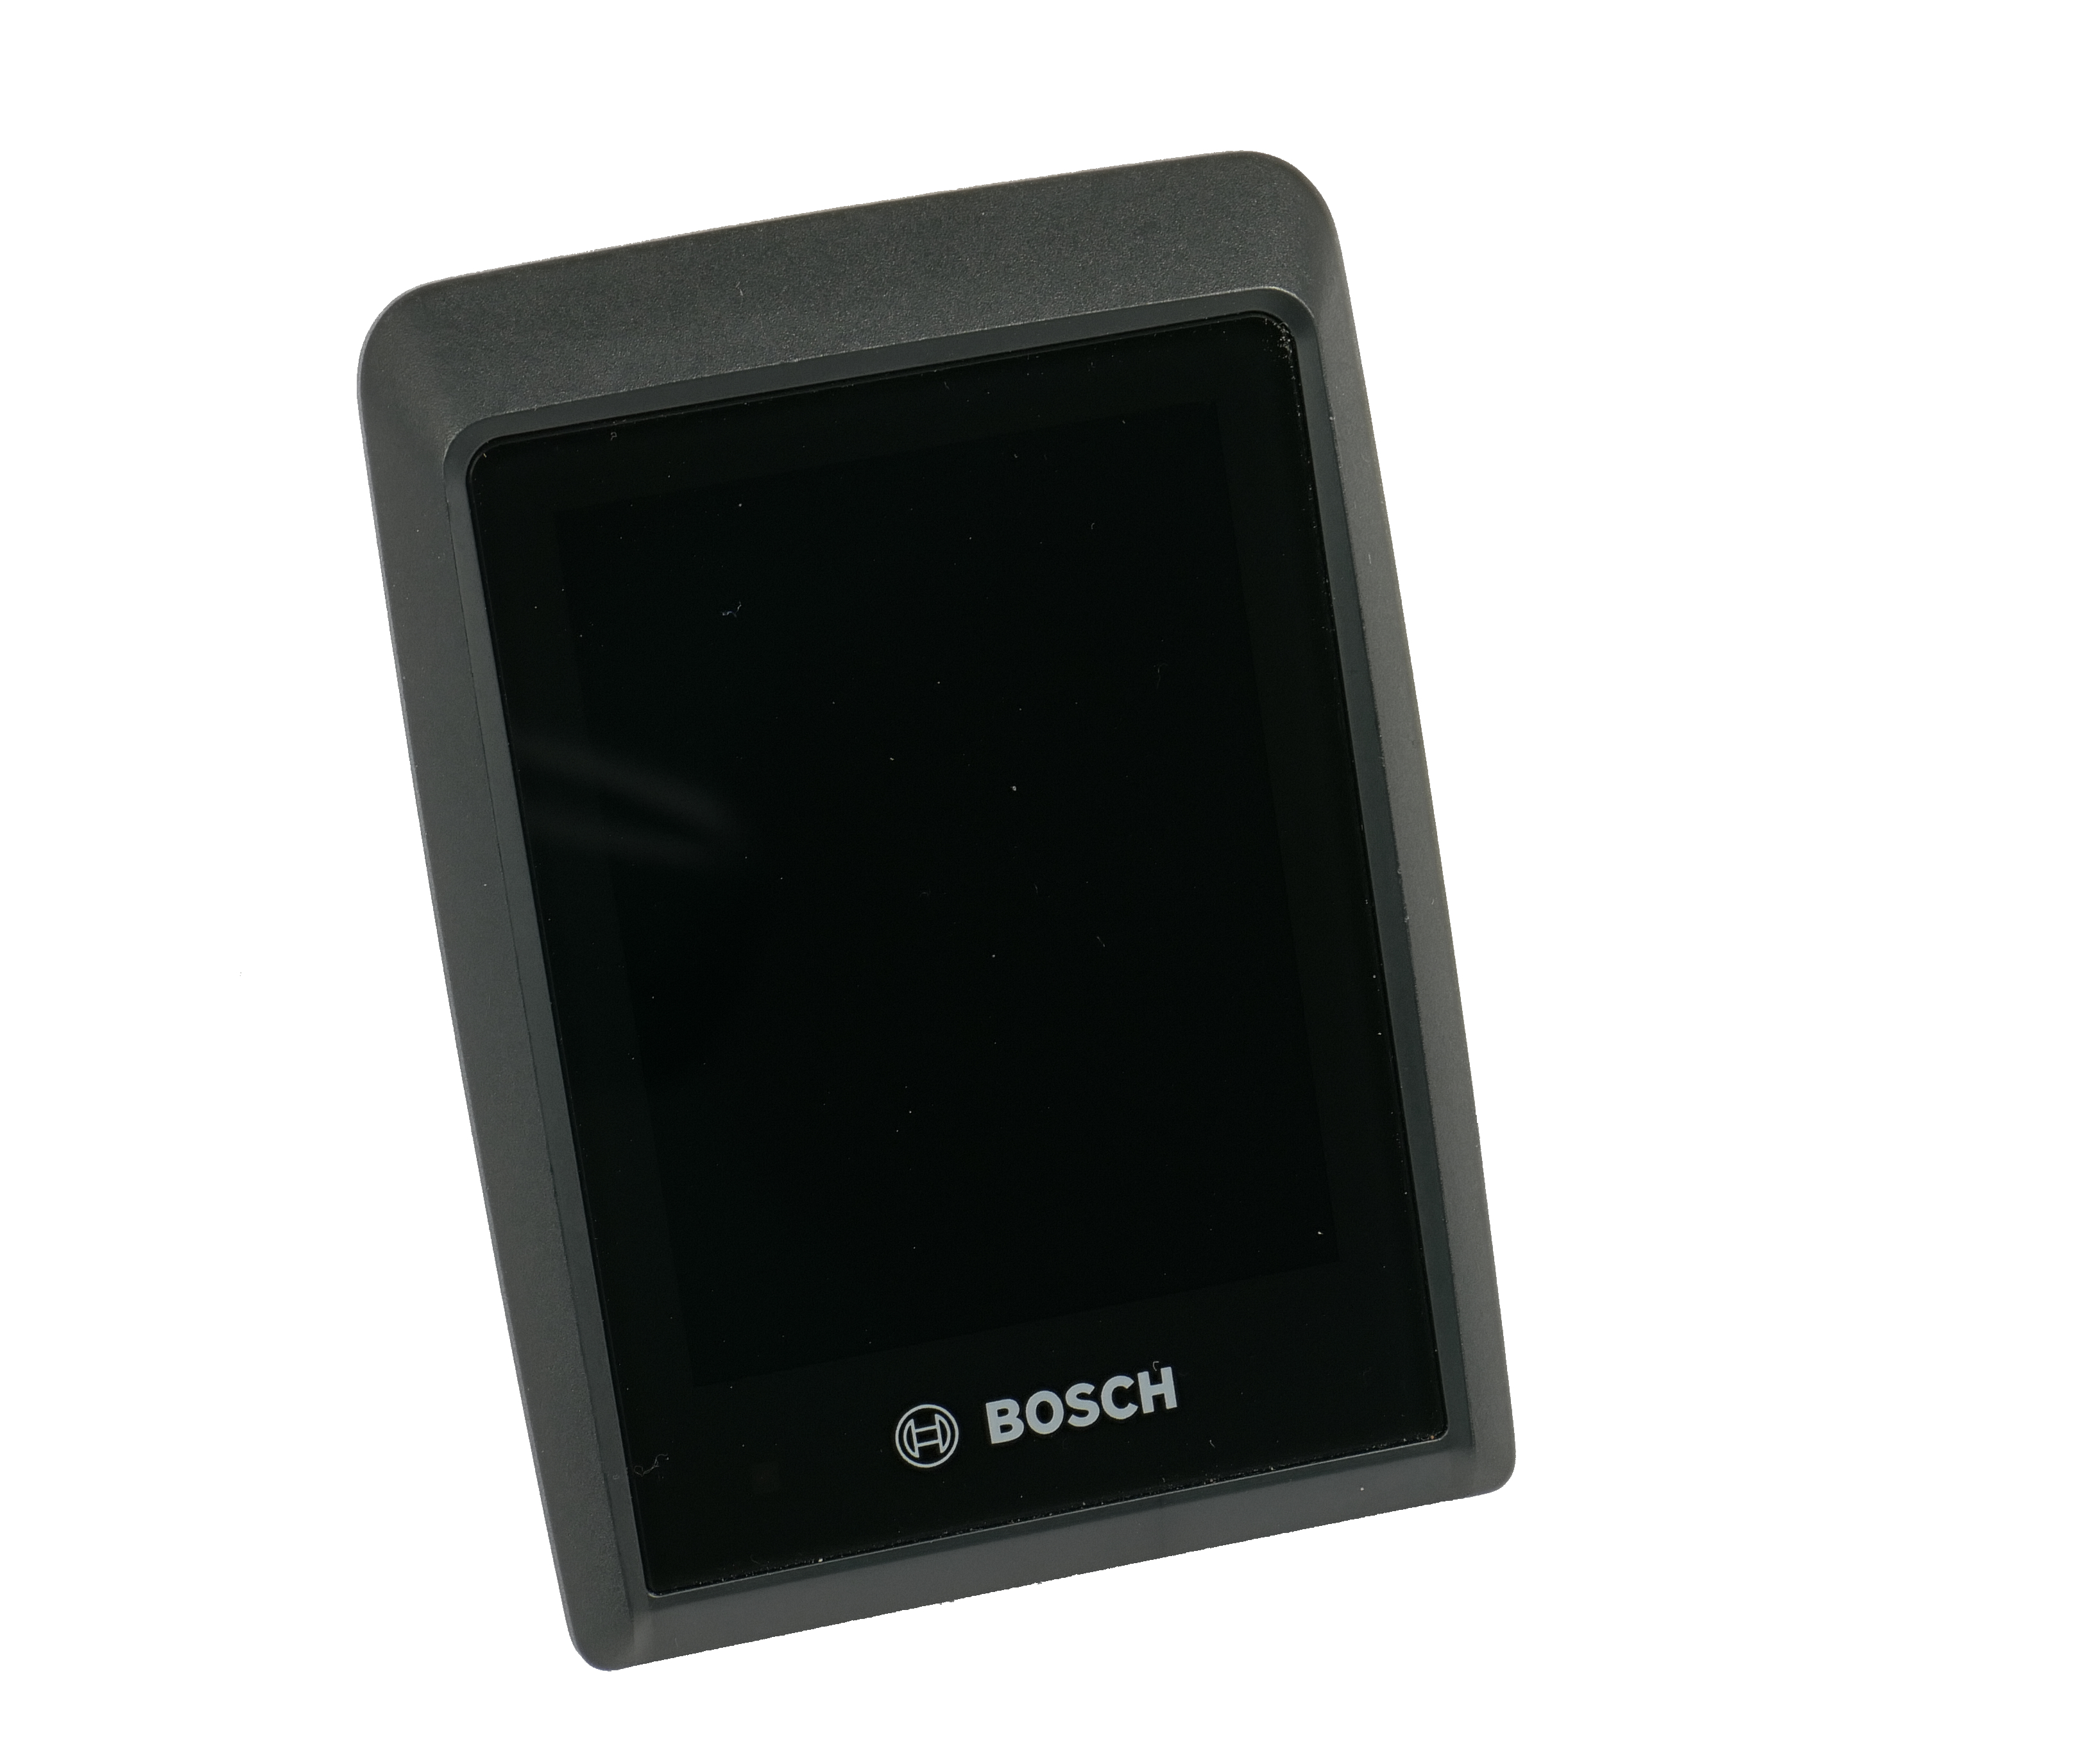 Bosch Kiox 500 Display Retrofit Kit